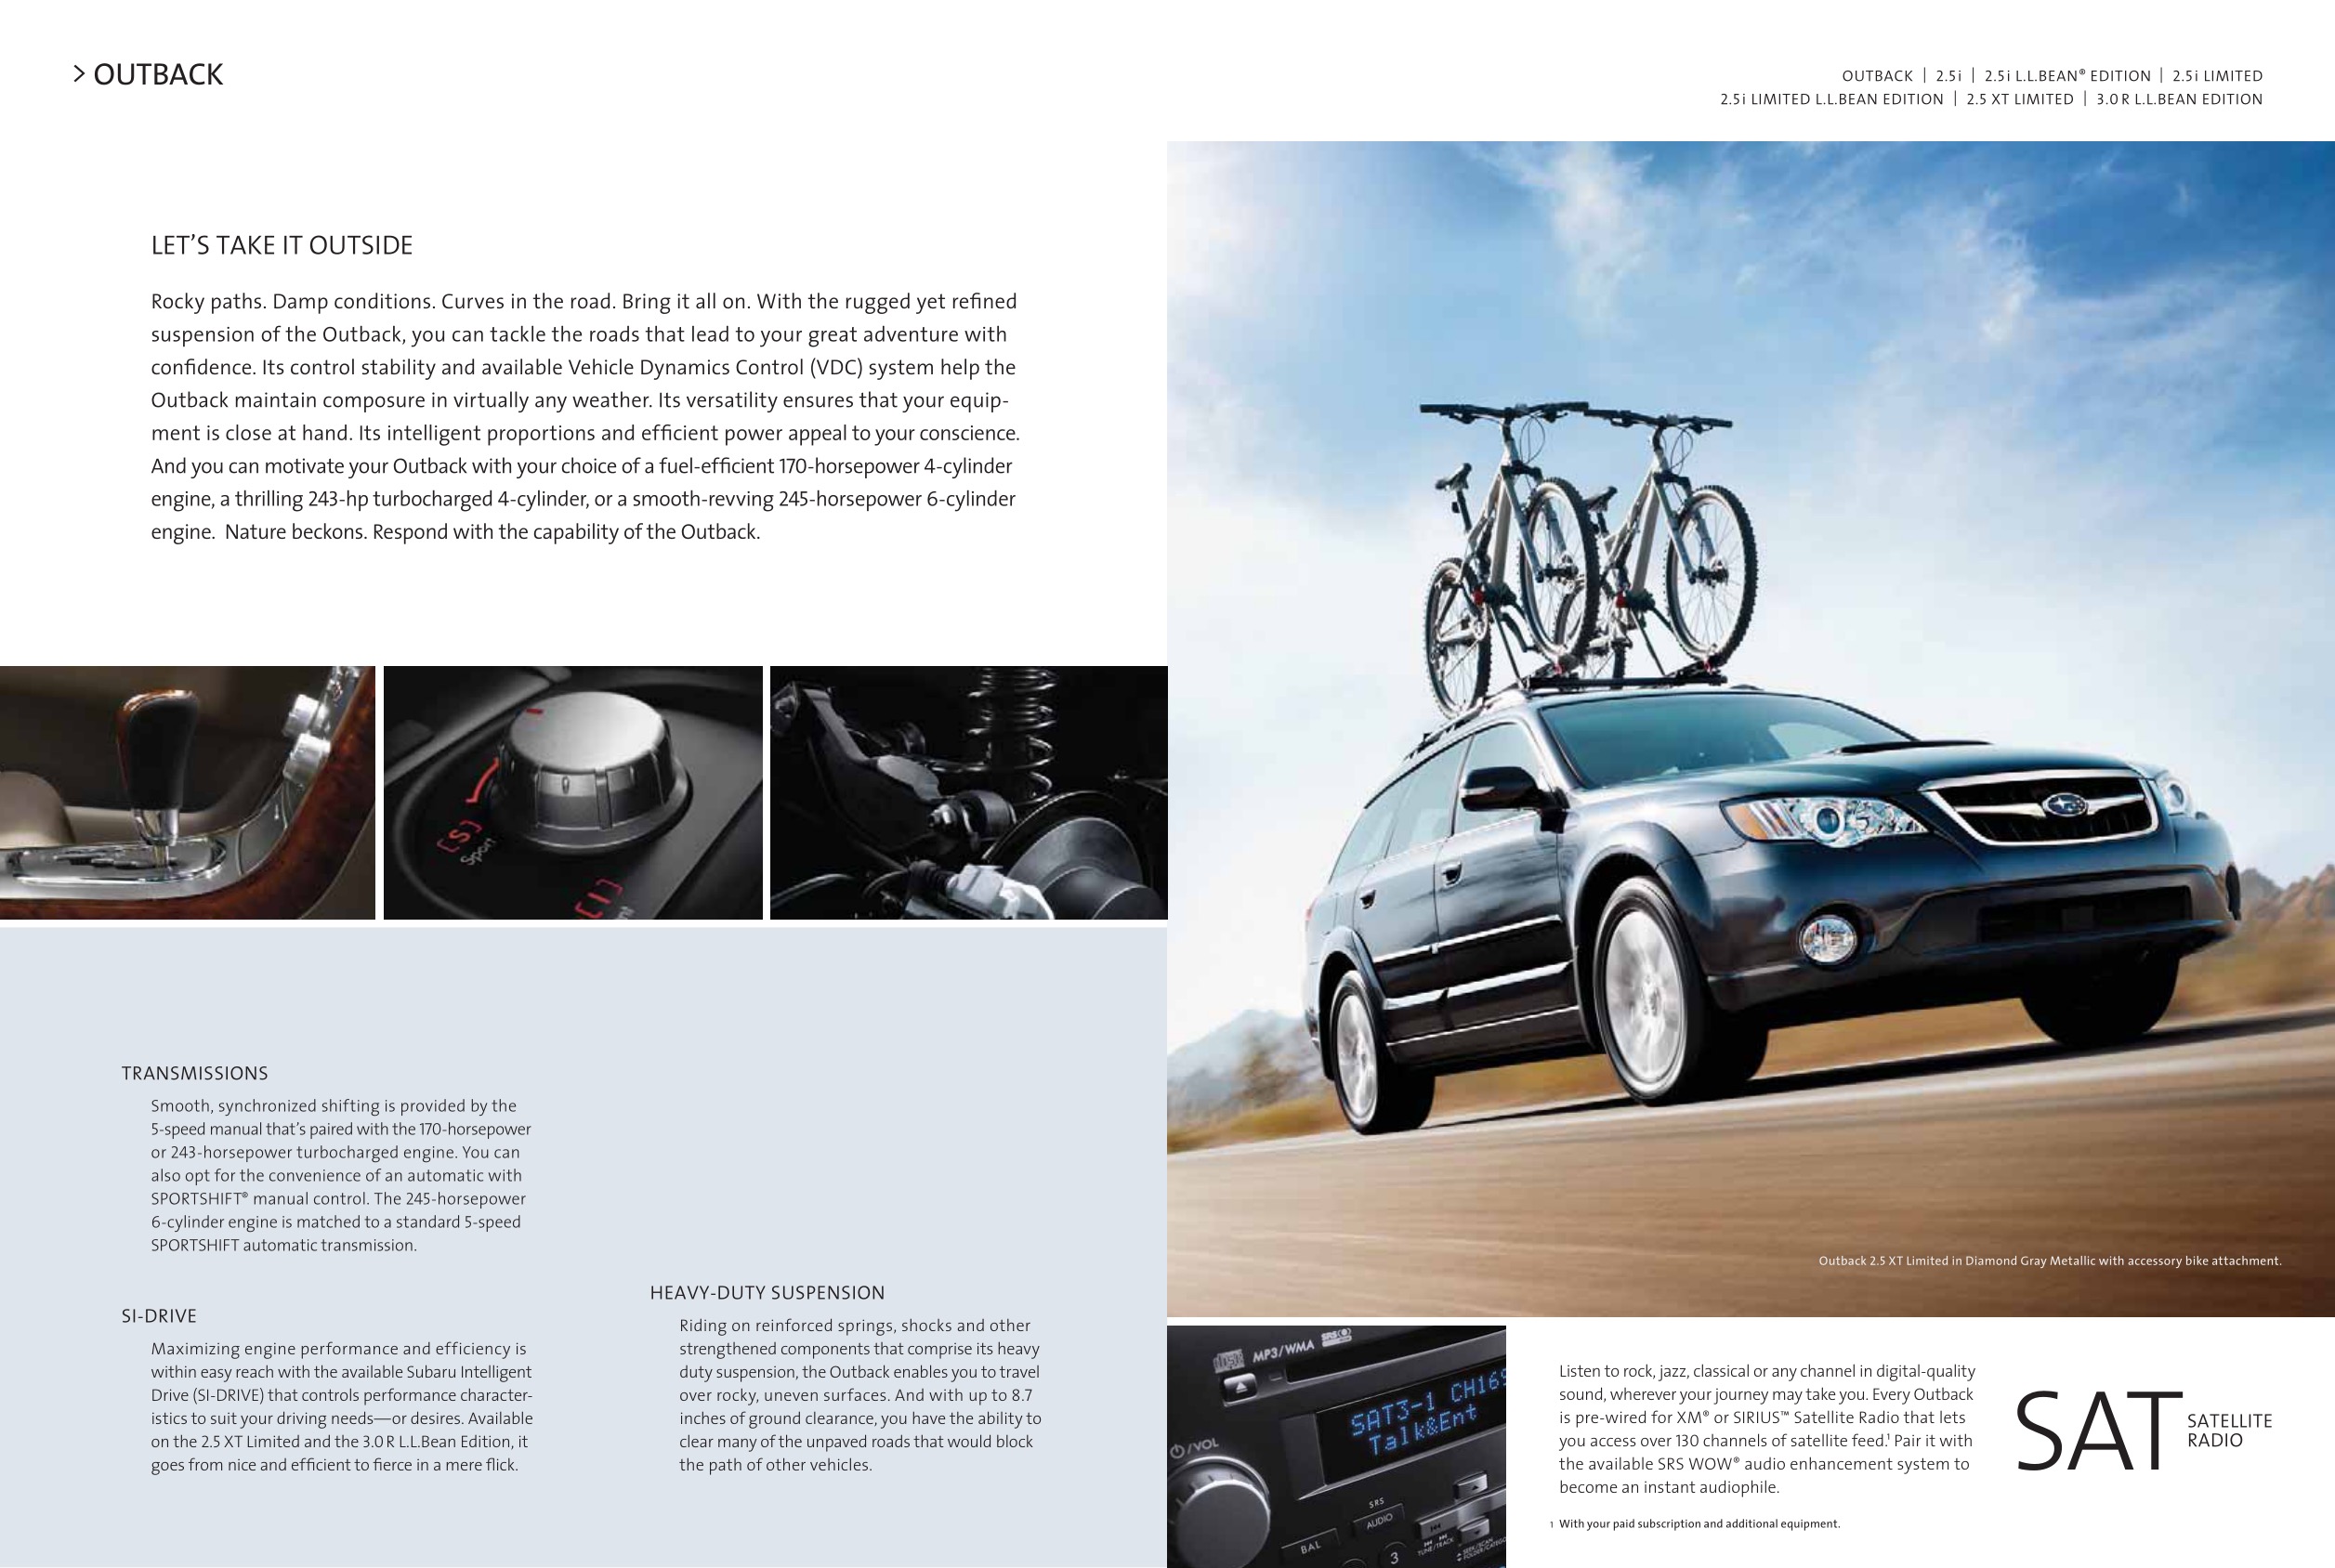 2008 Subaru Brochure Page 13